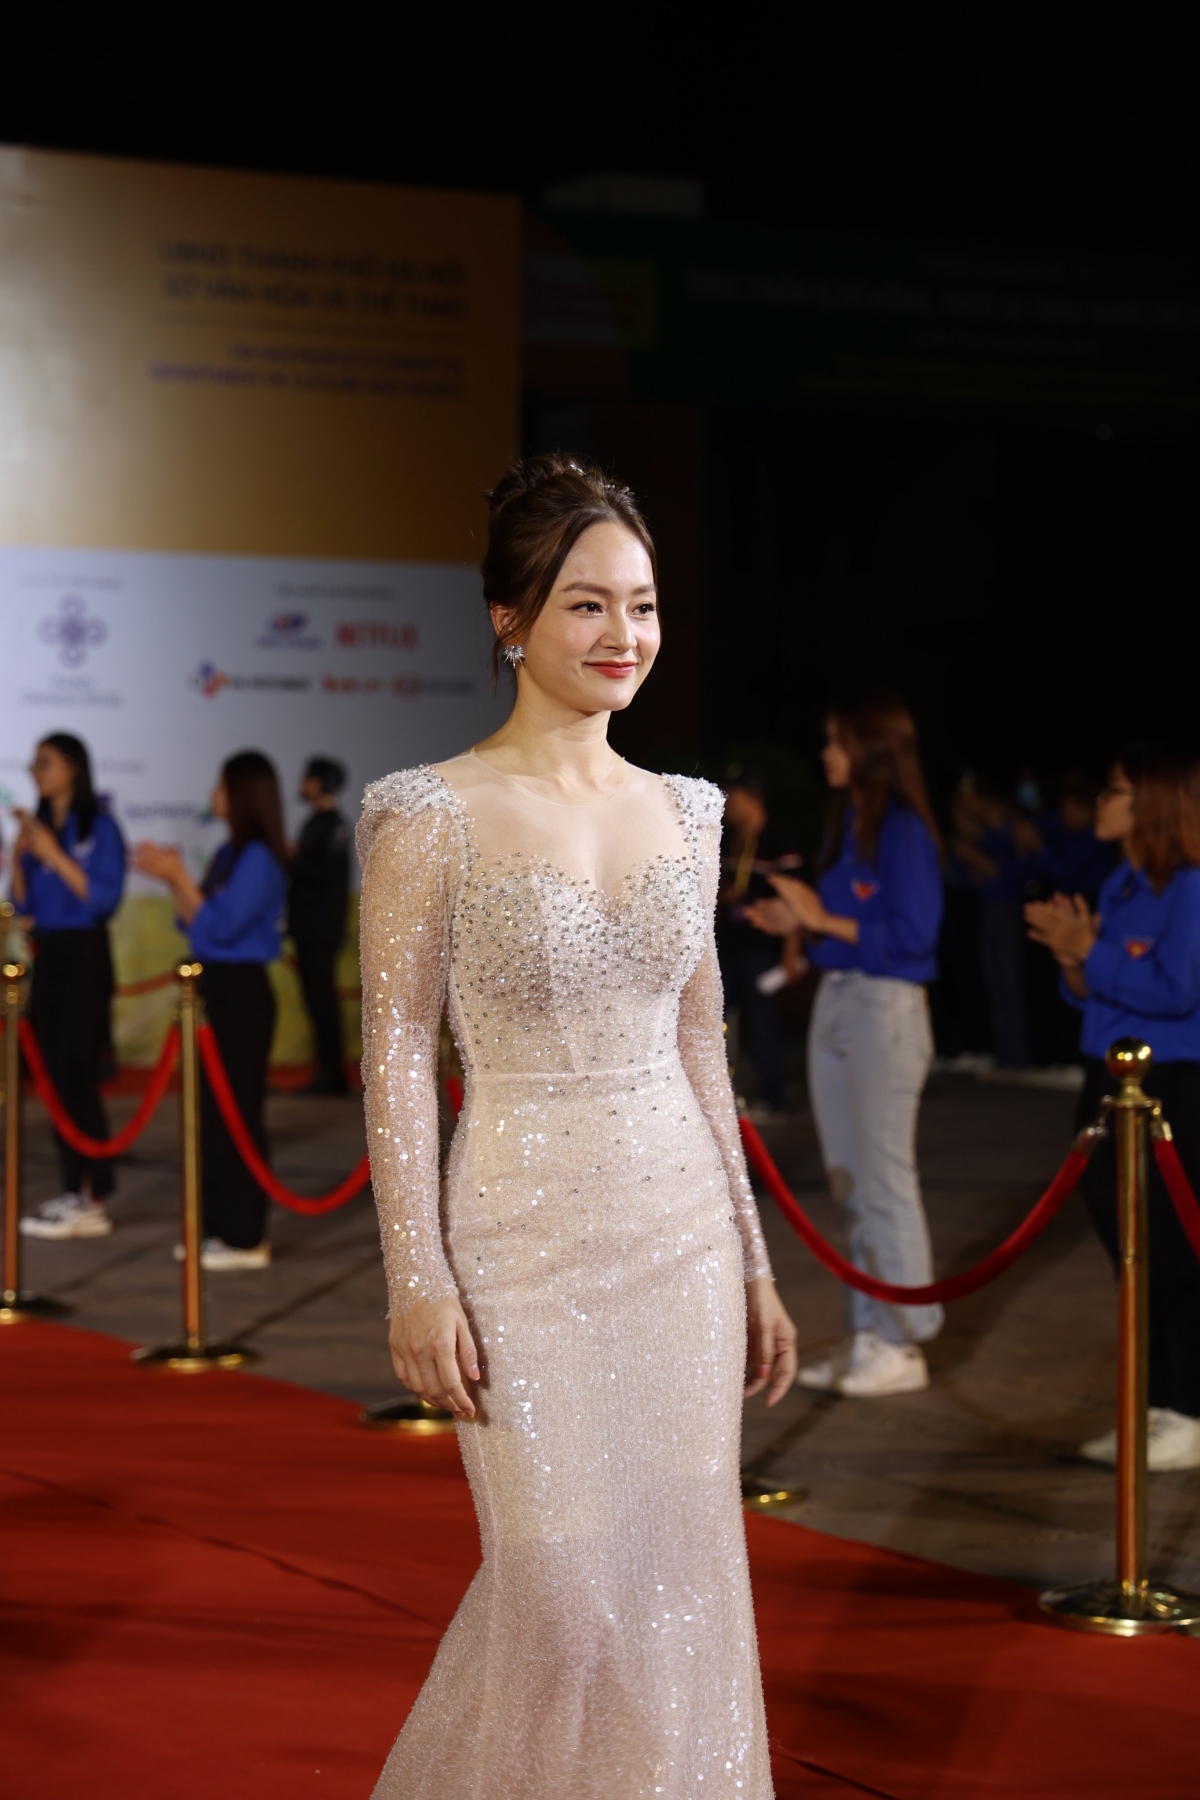 Diễn viên Lan Phương xuất hiện với bộ đầm trắng ánh kim. Cô tham gia một vai phụ trong Bố già, một trong số các phim Việt được trình chiếu trong liên hoan phim năm nay.
 